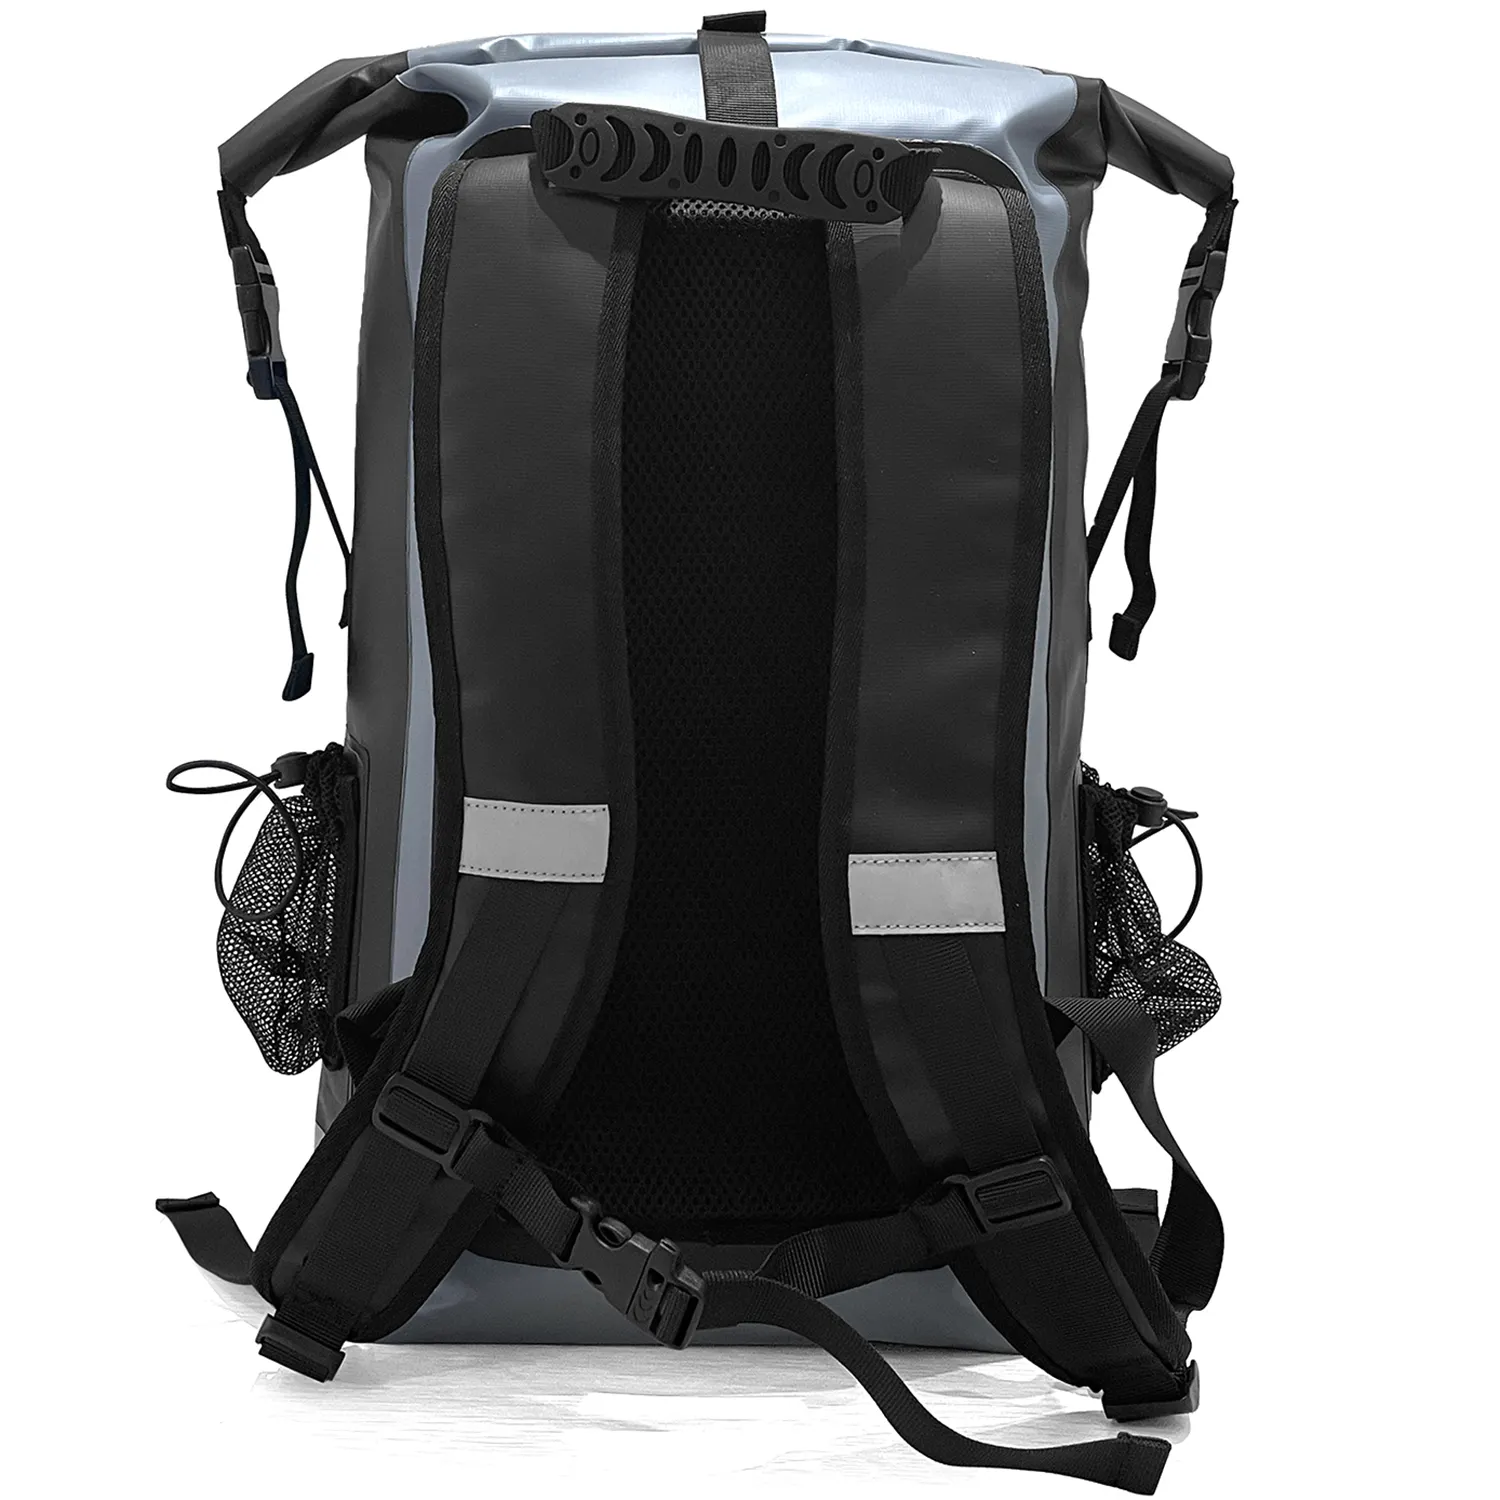 कैम्पिंग हाइकिंग के लिए ग्राहक लोगो वॉटरप्रूफ बैकपैक 500D पीवीसी तिरपाल 30L ड्राई सैक बैग का निर्माण करें